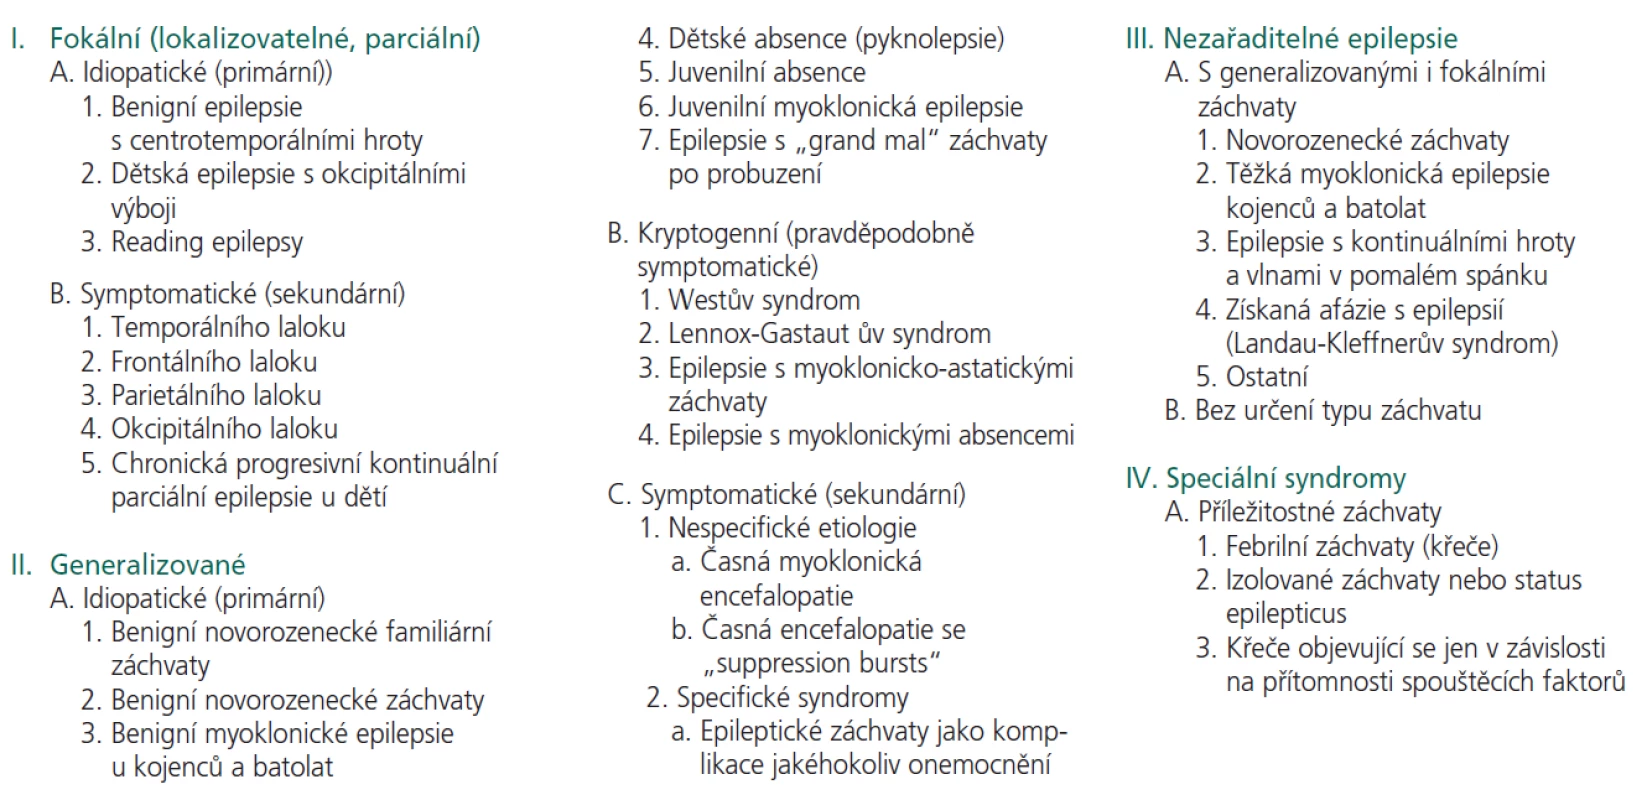 ILAE klasifikace epilepsií a epileptických syndromů (1989).